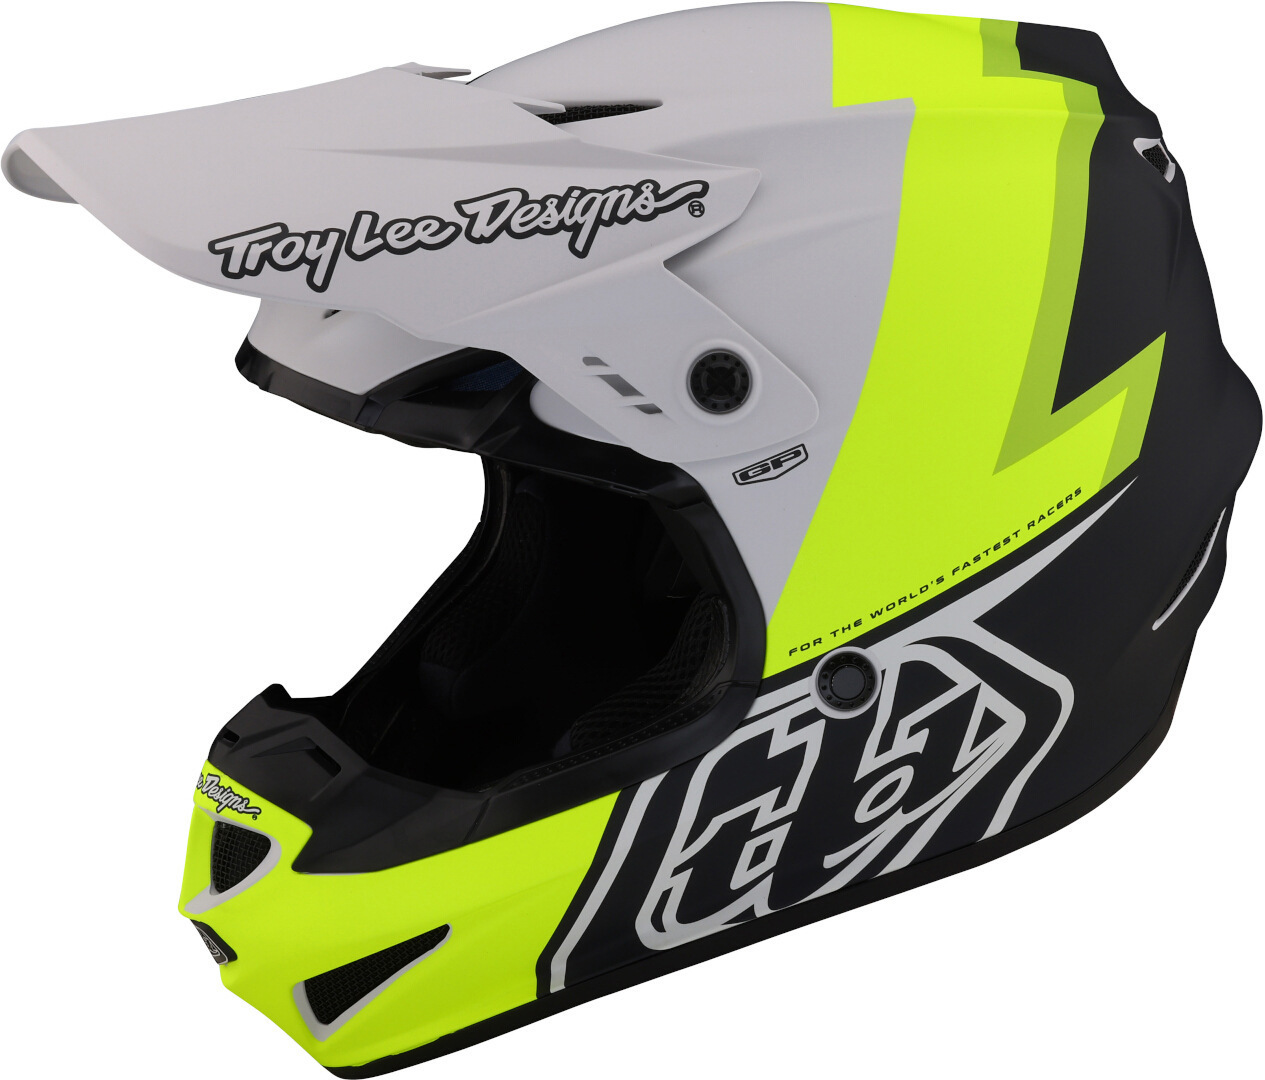 Troy Lee Designs GP Volt Motocross Helm, schwarz-weiss-gelb, Größe XS 54 55